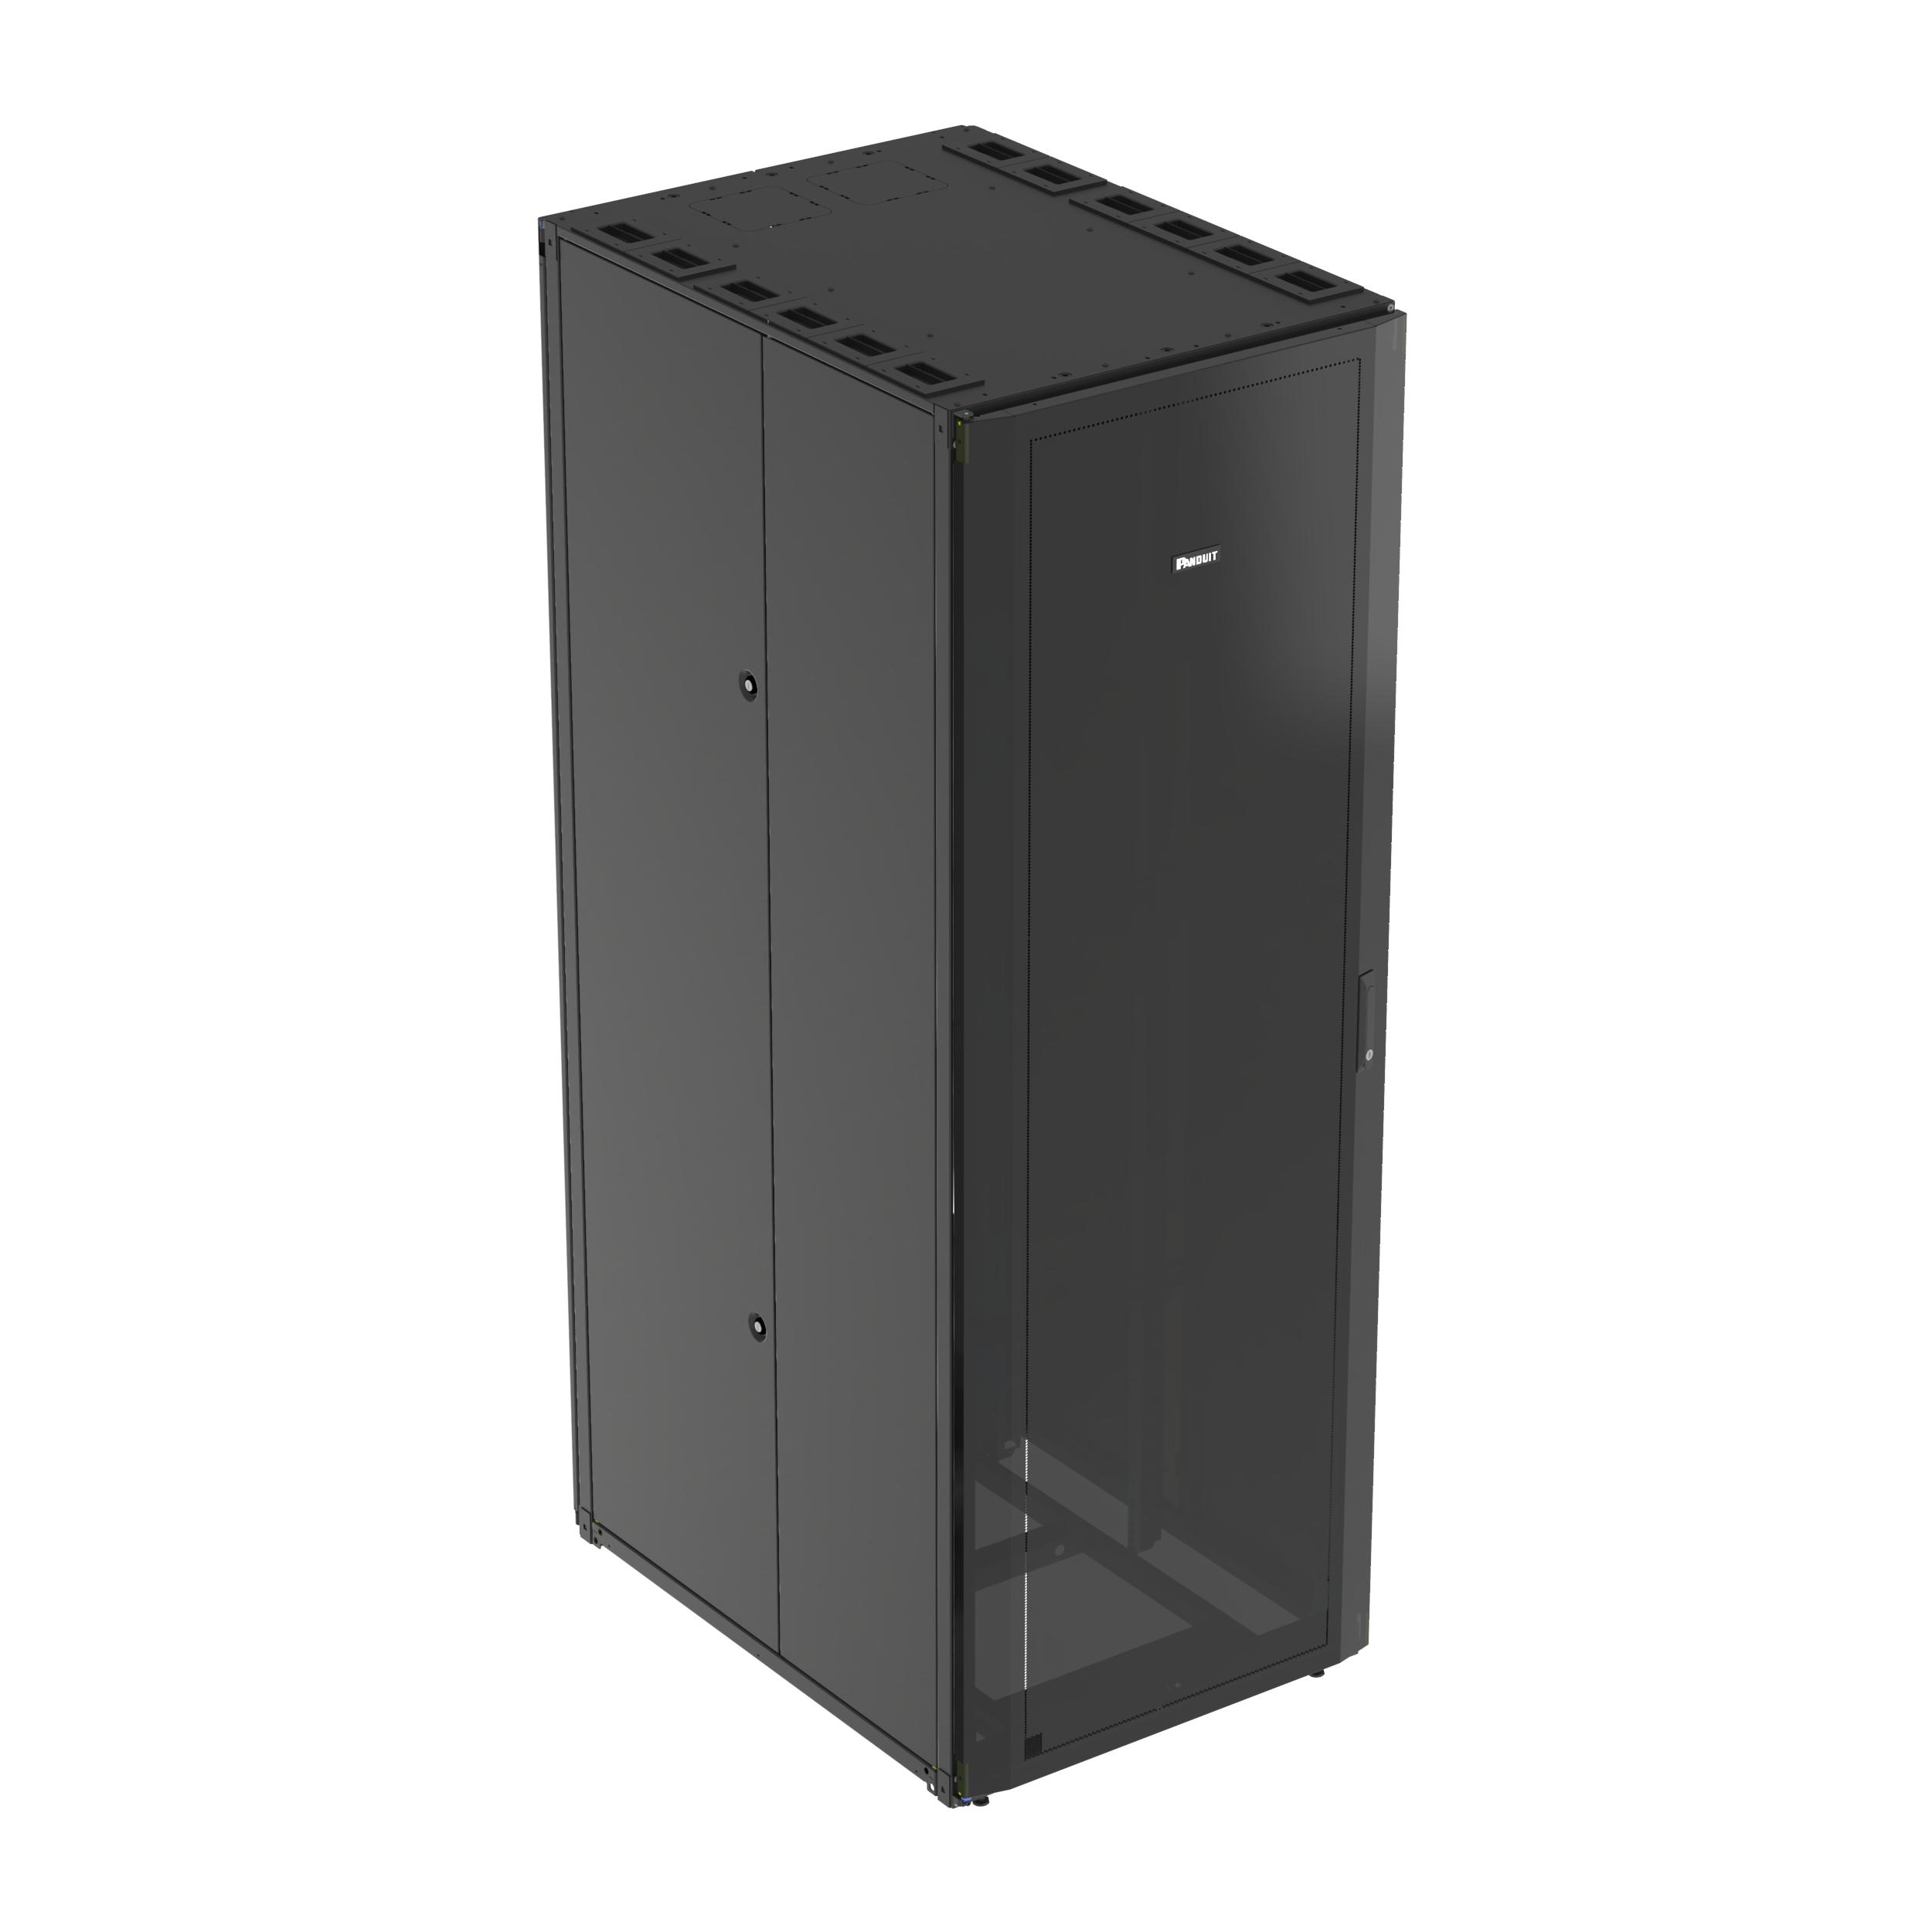 Panduit S6512BU Net-Access™ S-Type Cabinet